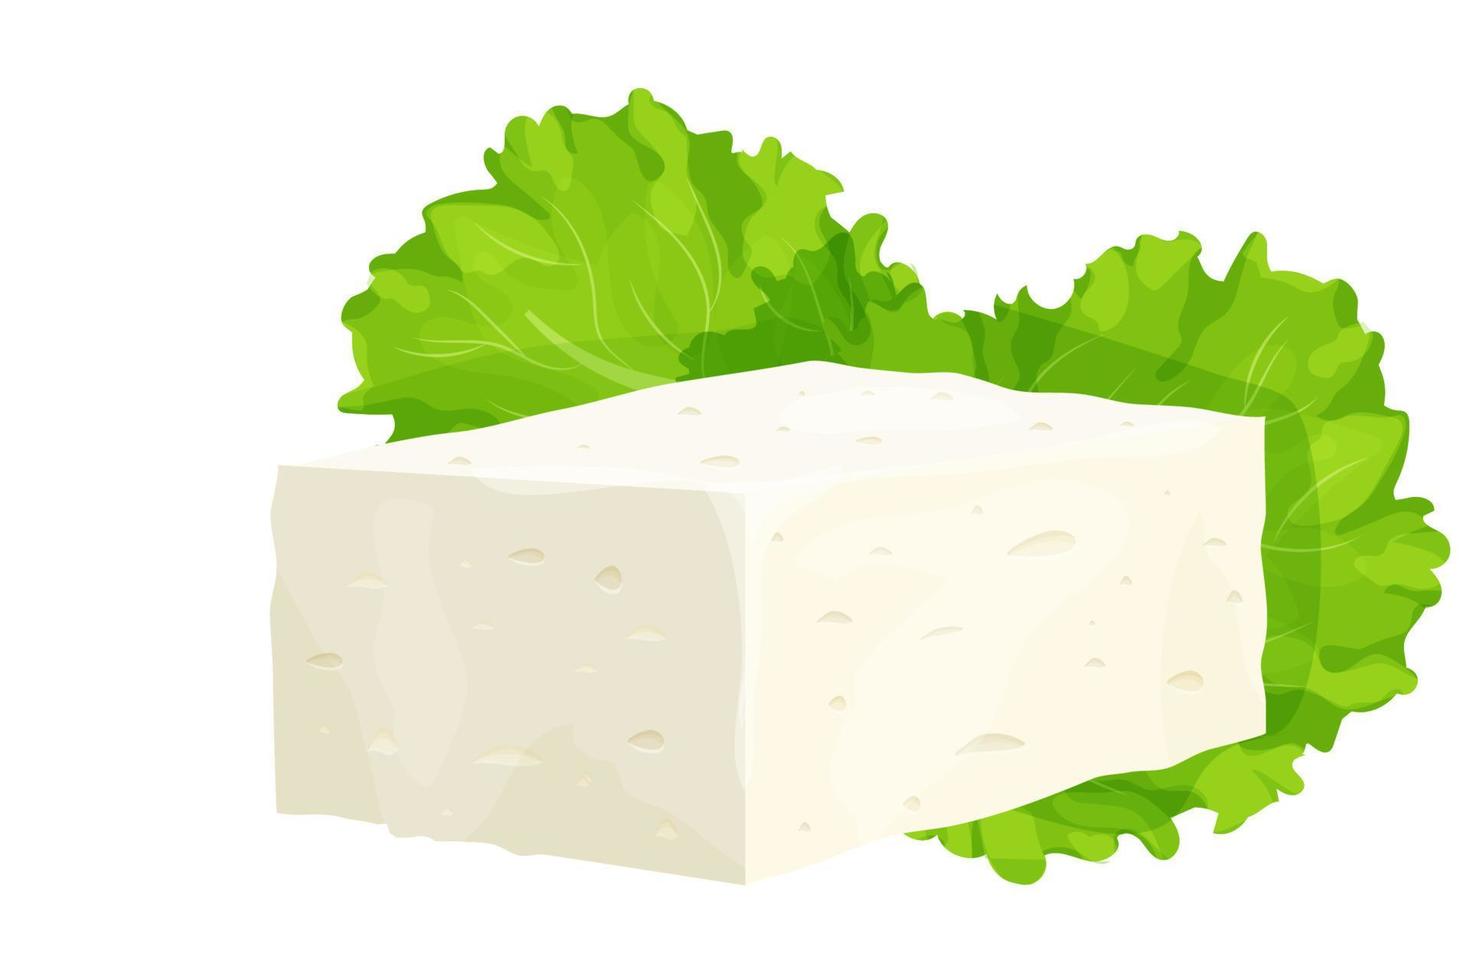 pezzo di formaggio feta in stile cartone animato ingrediente dettagliato isolato su sfondo bianco. formaggio bianco a pasta greca a base di latte di pecora o fagioli di latte. illustrazione vettoriale